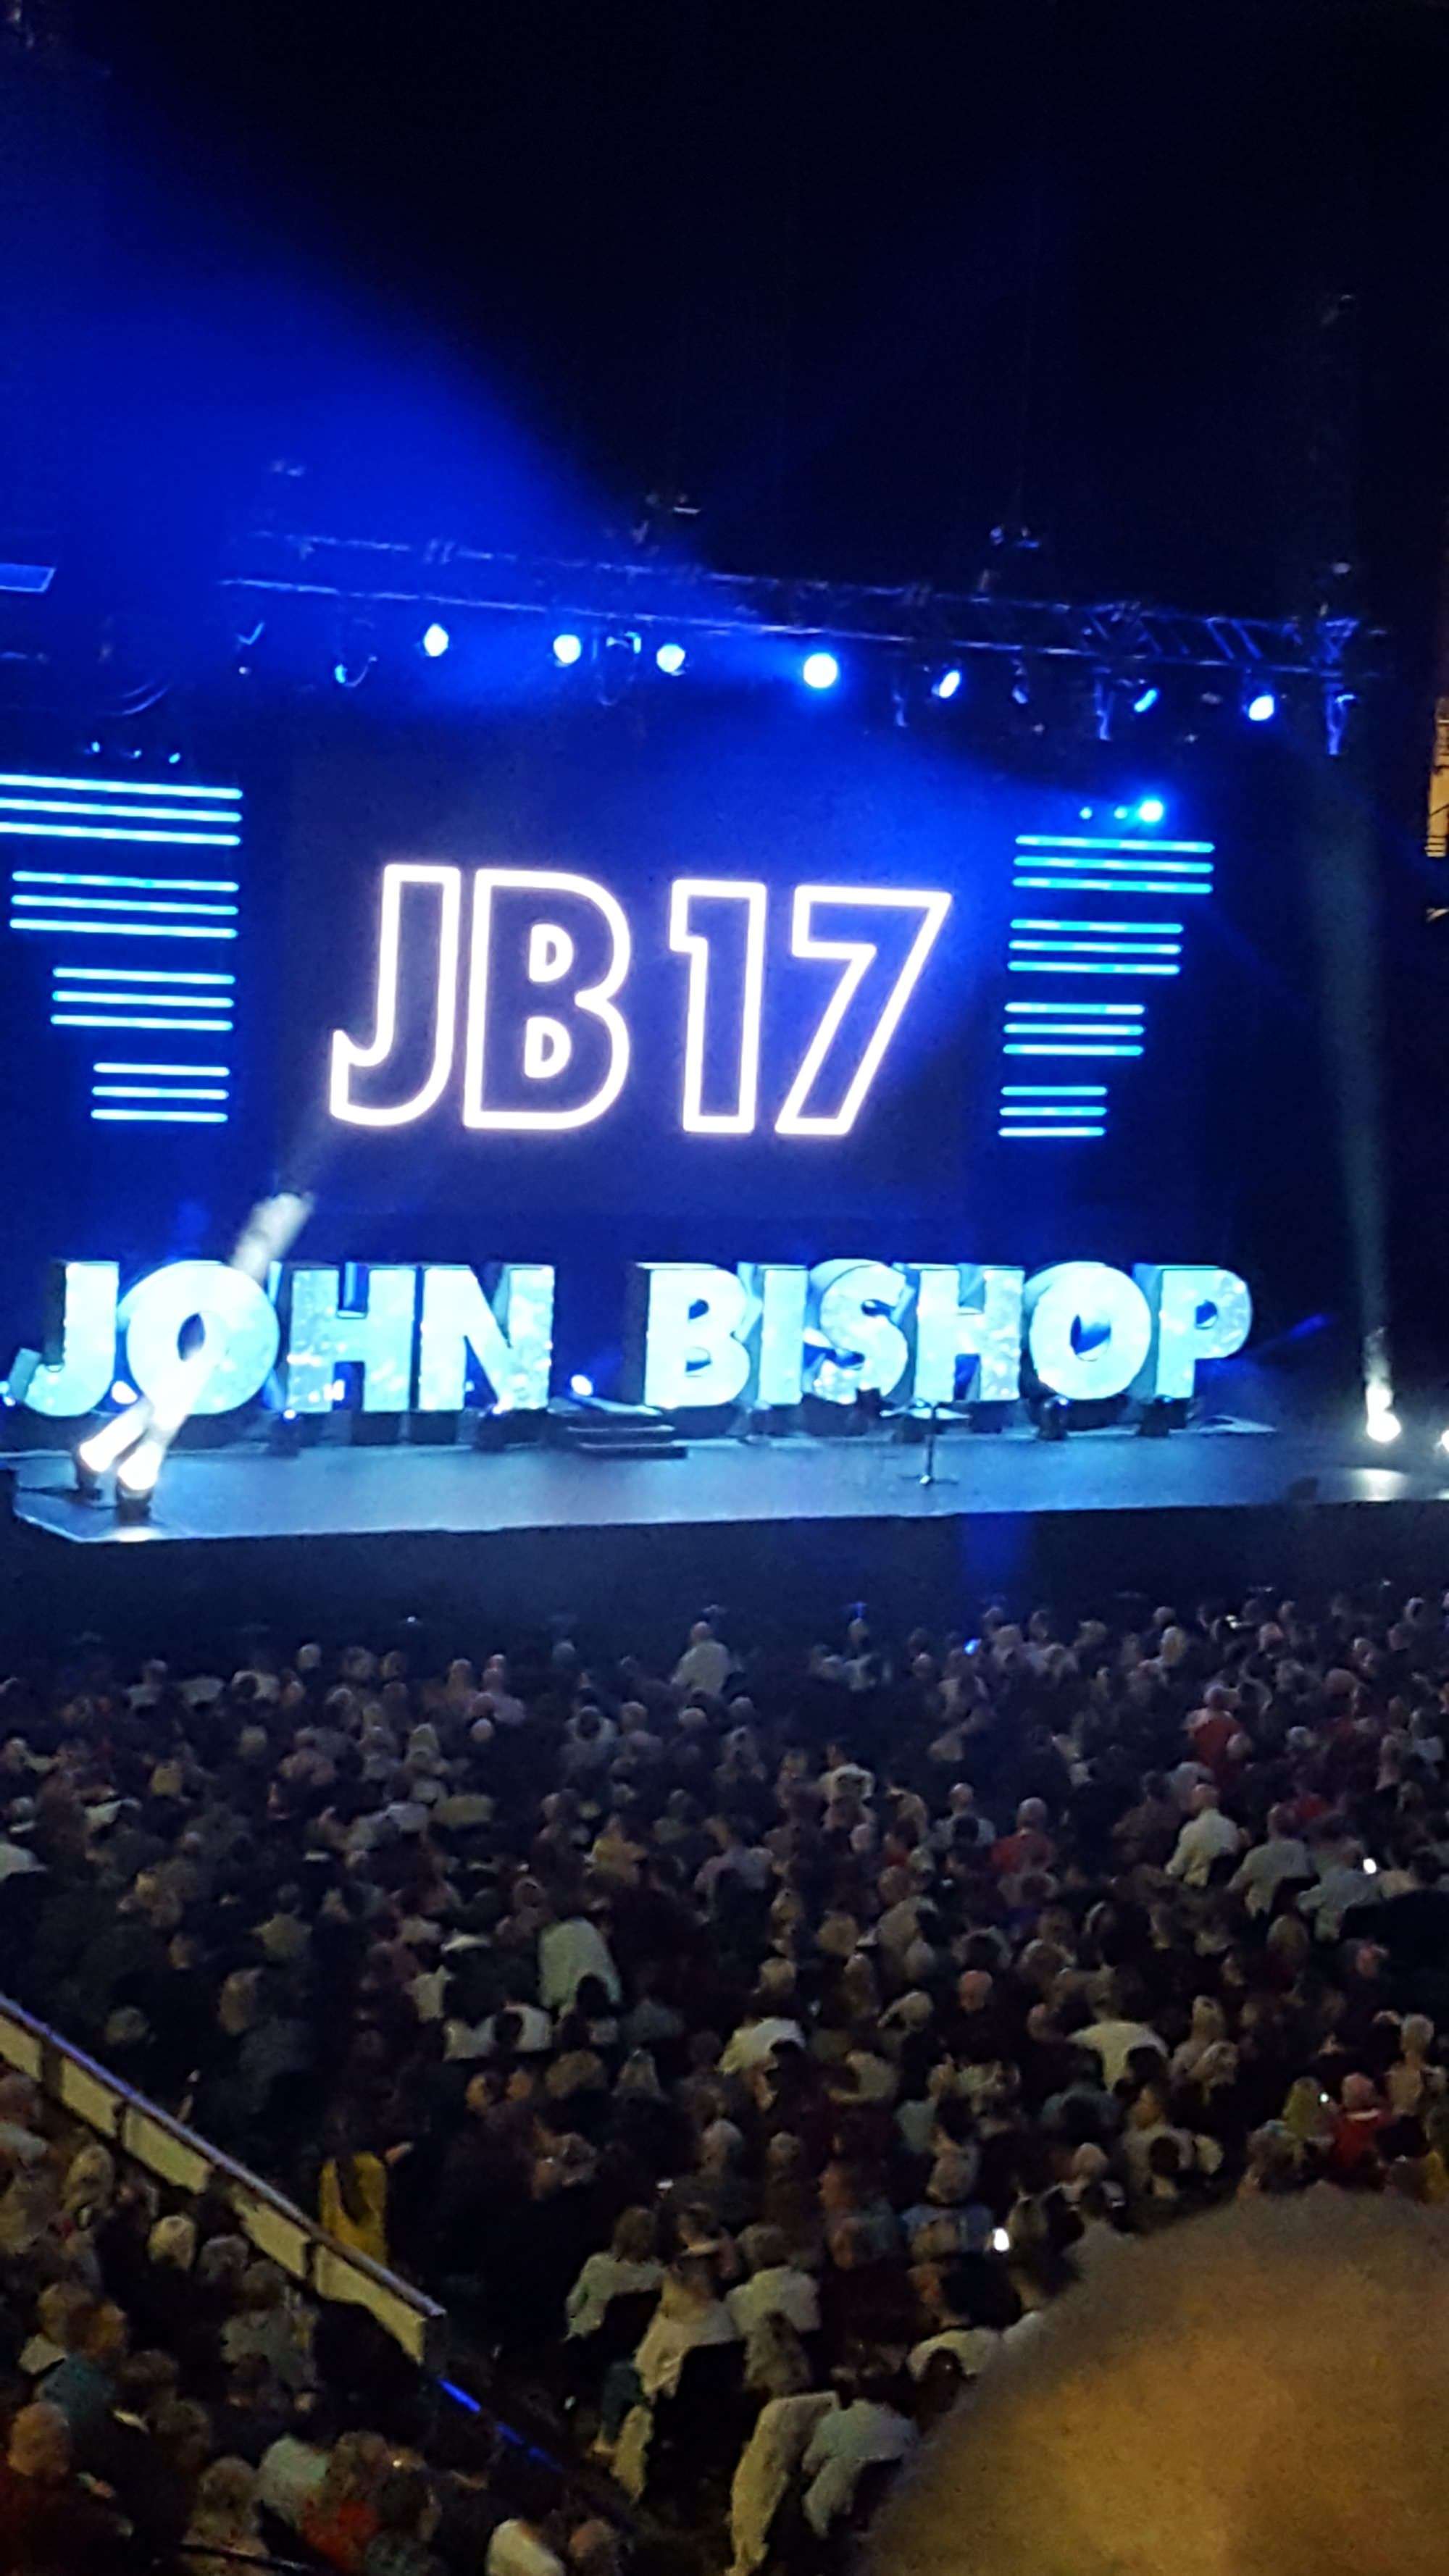 View of John bishop at Utilita Arena Sheffield from Seat Block 208